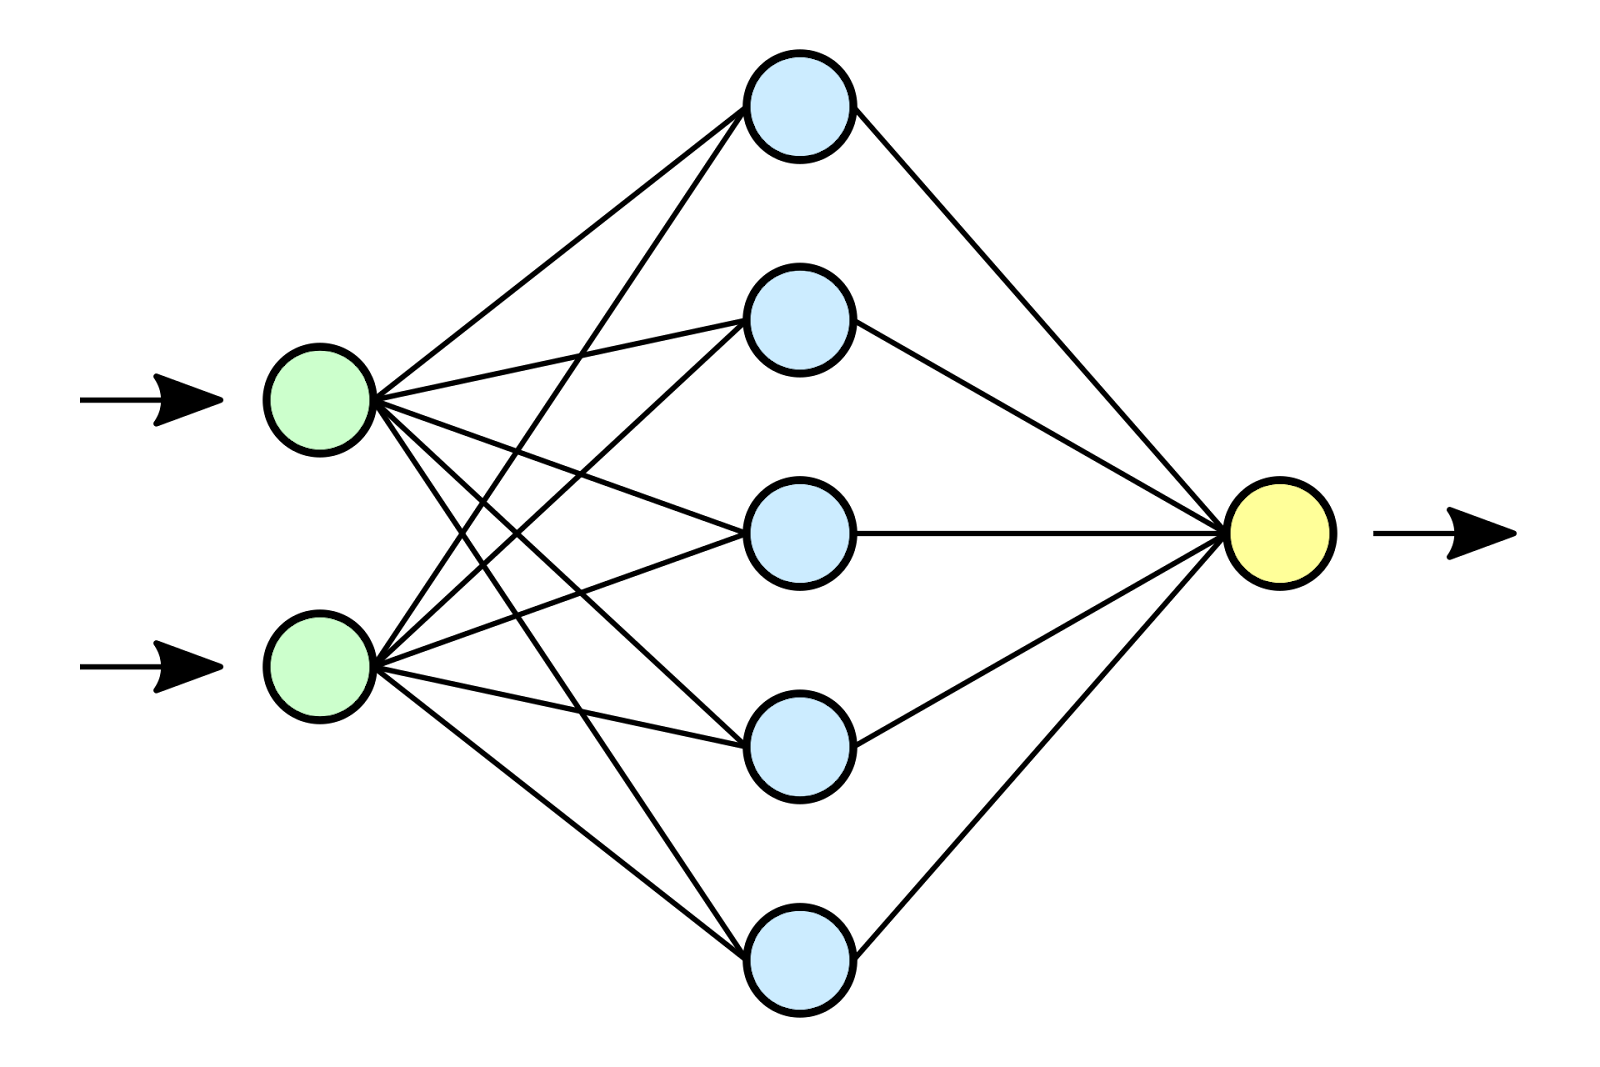 Пример самой простой архитектуры полносвязной нейронной сети